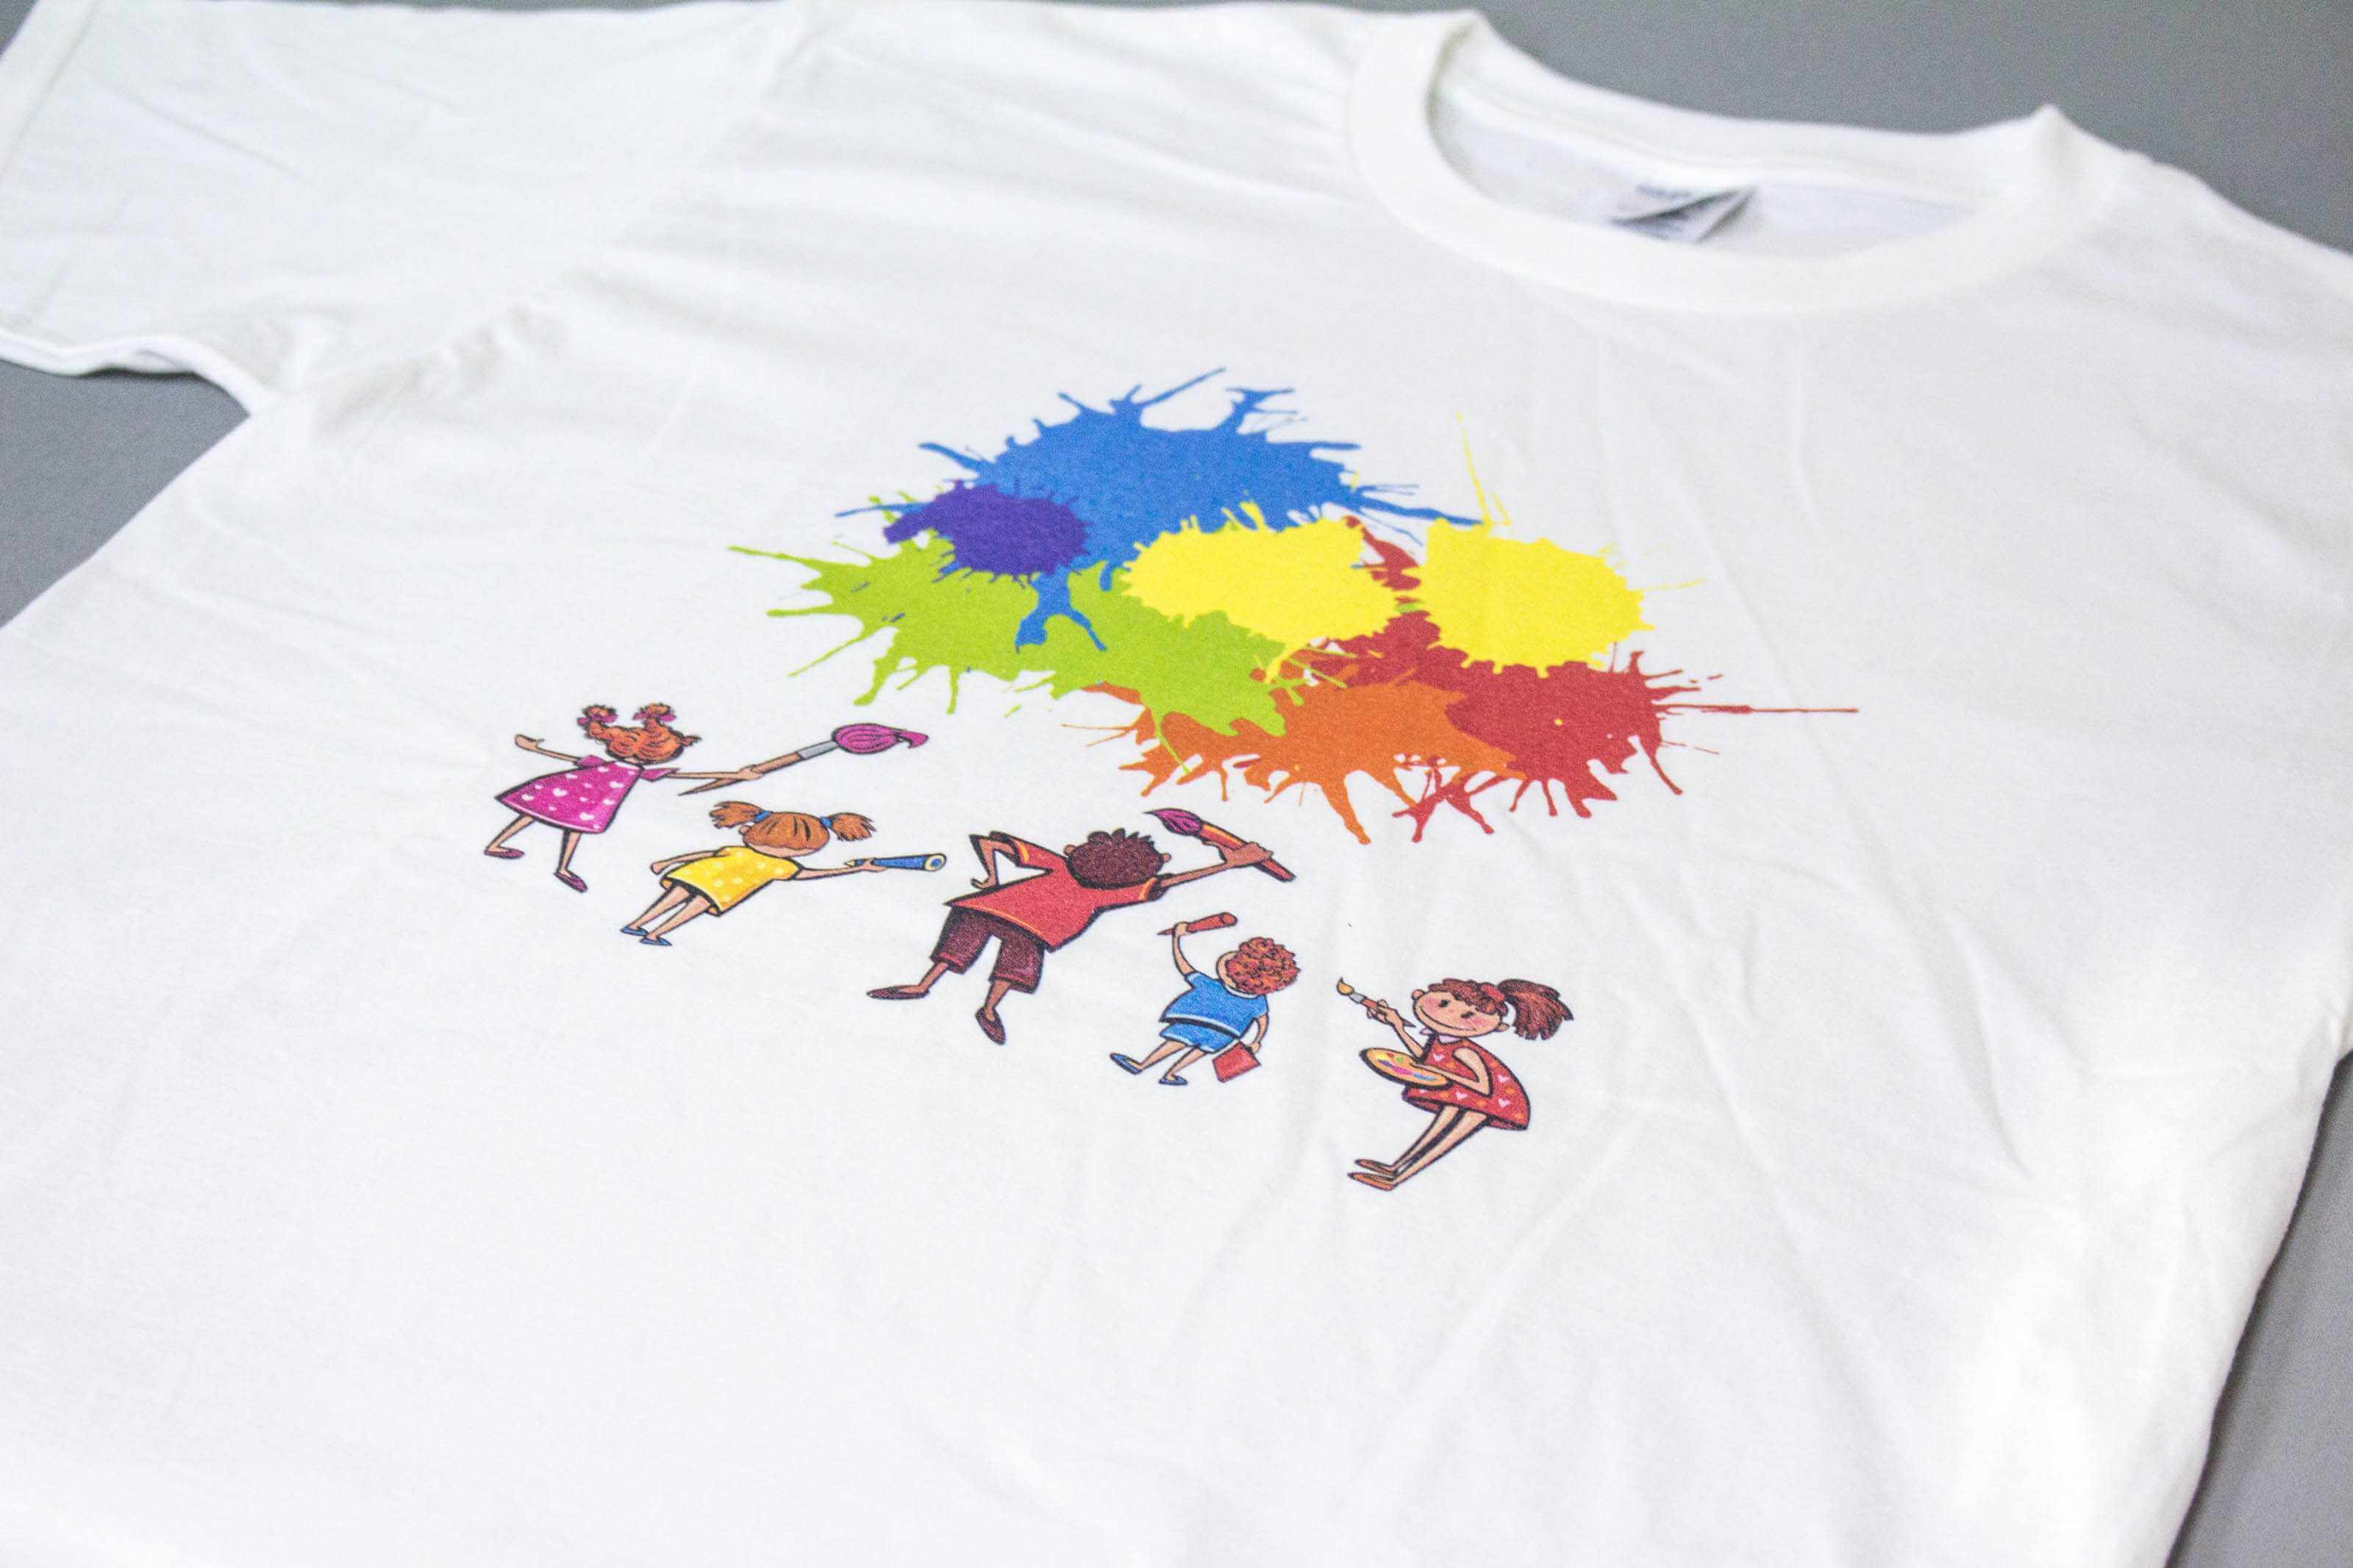 客製化T恤- 彩色塗鴉 客製化T恤的第2張圖(客製化公司制服、班服製作、團體服製作等示意或作品圖)